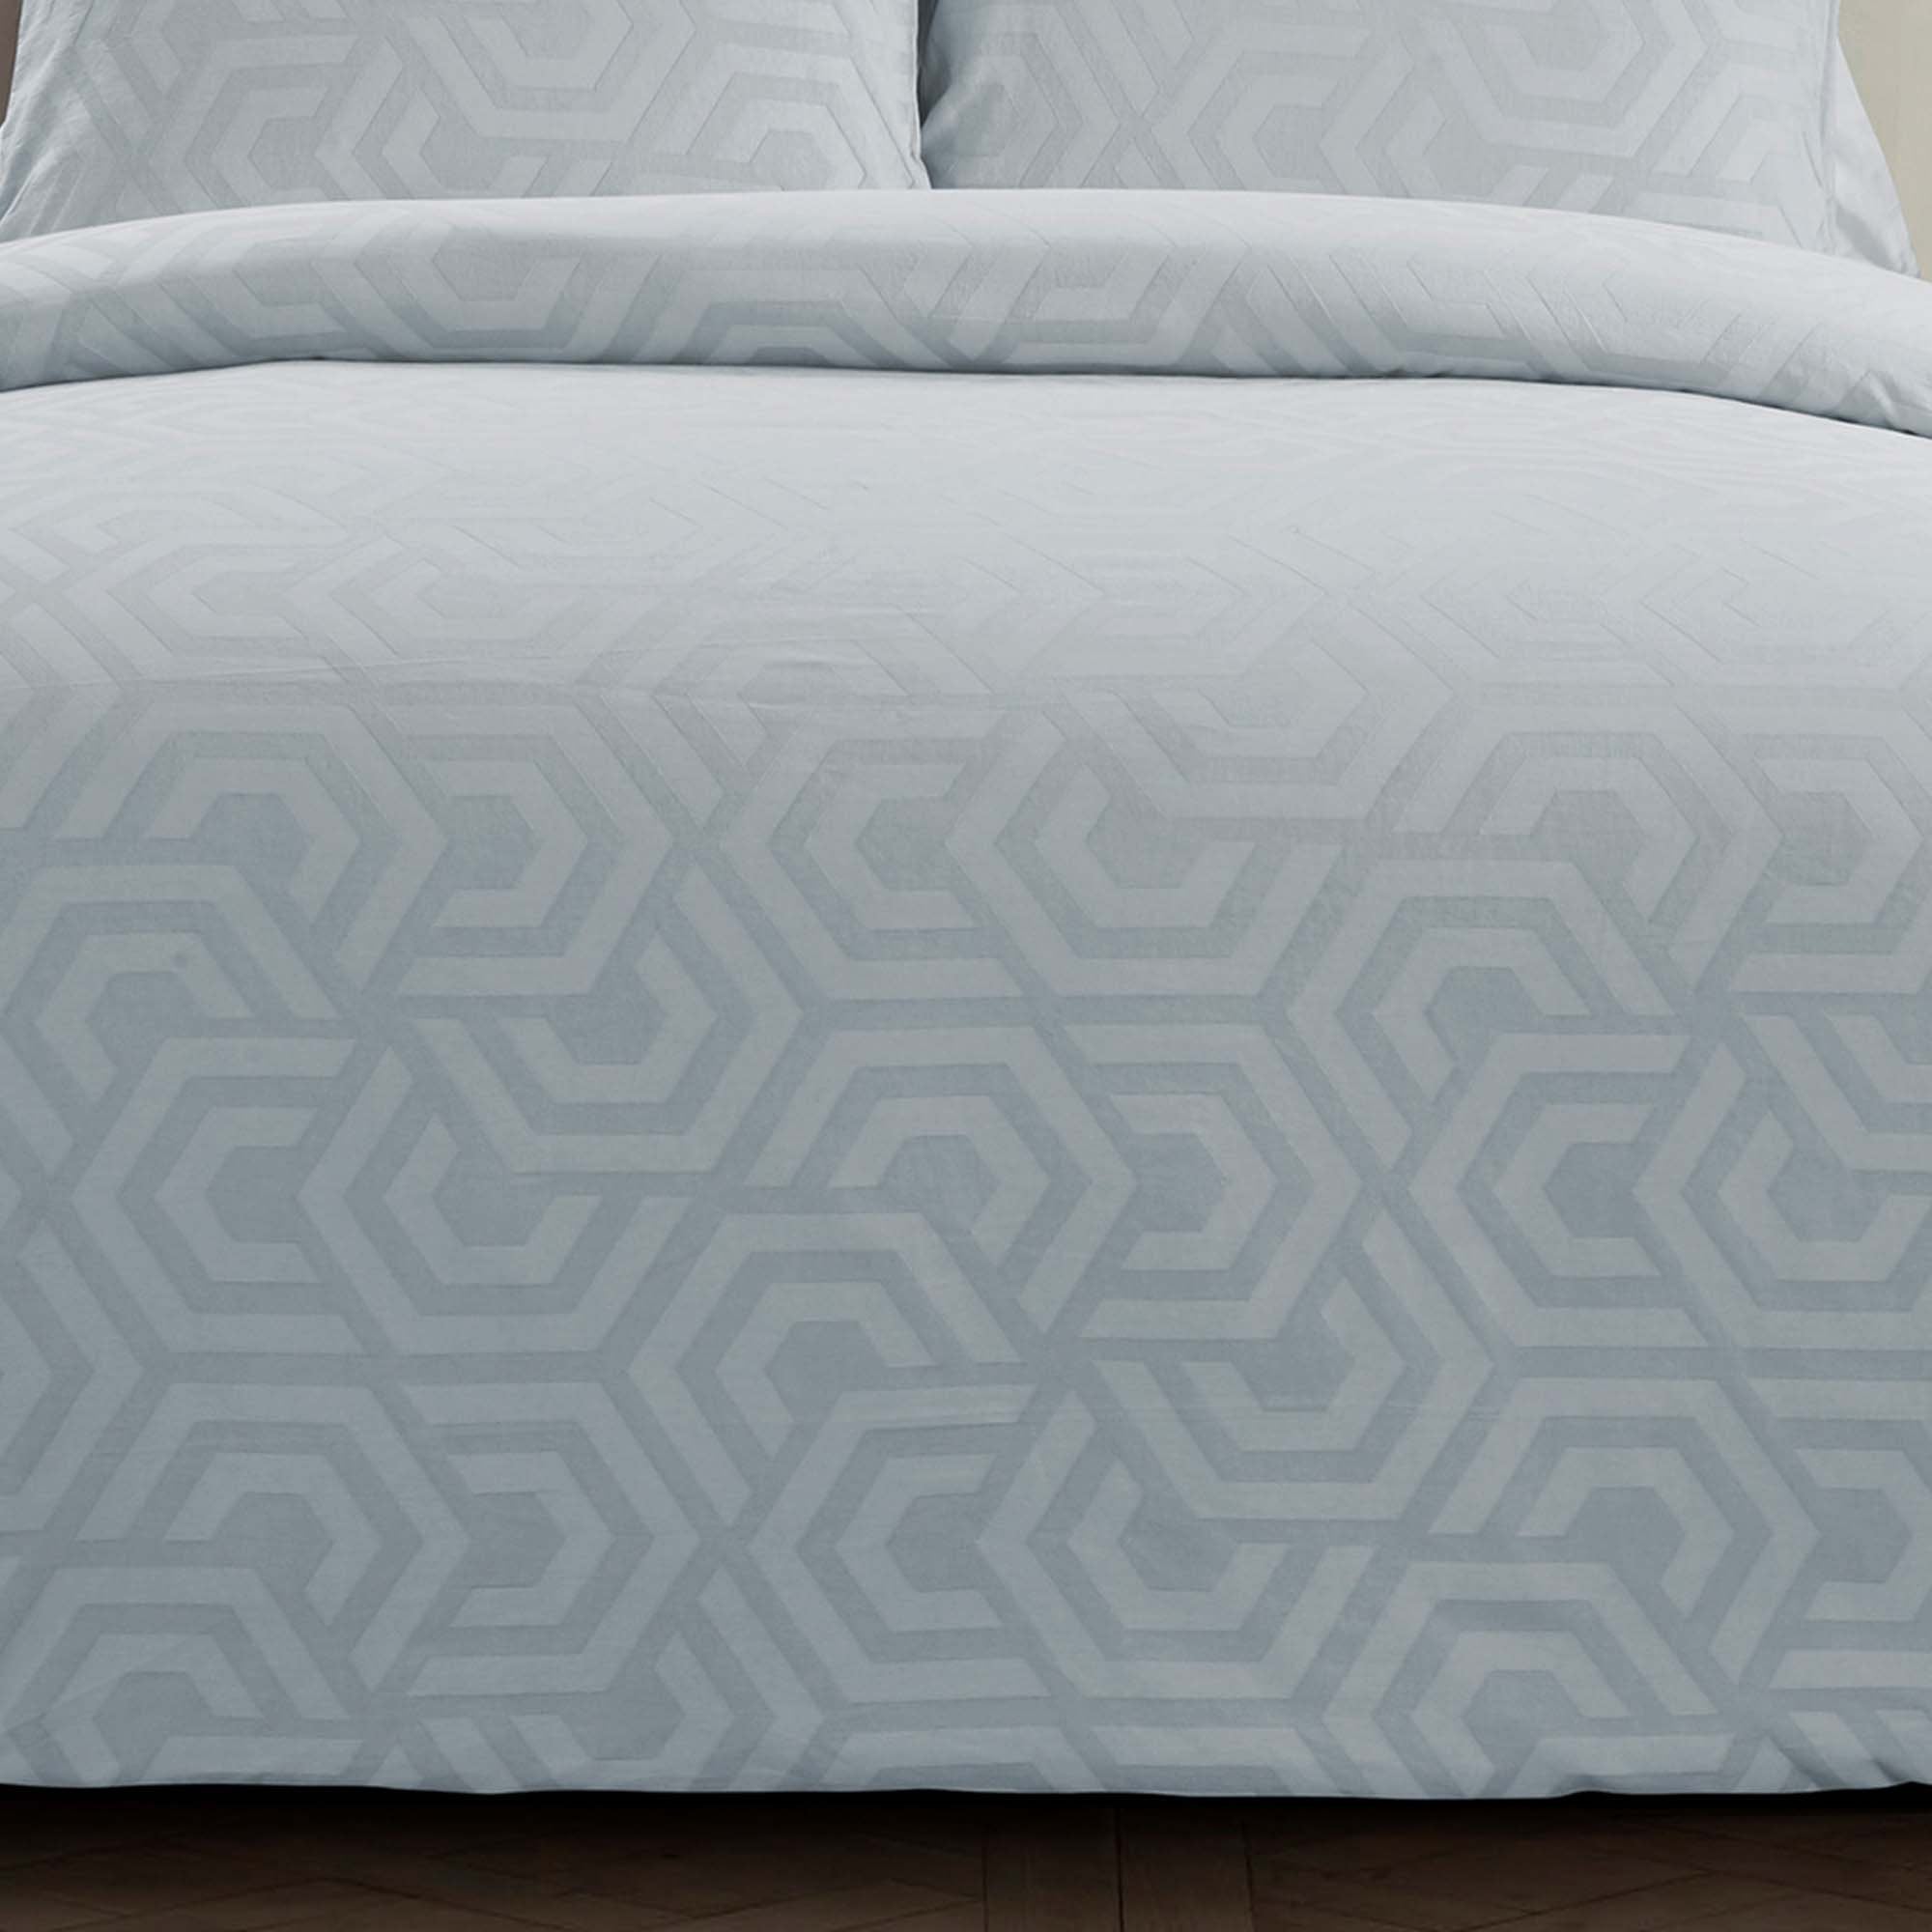 Seville Soft Blue 3-Piece Comforter Set Comforter Sets By Donna Sharp